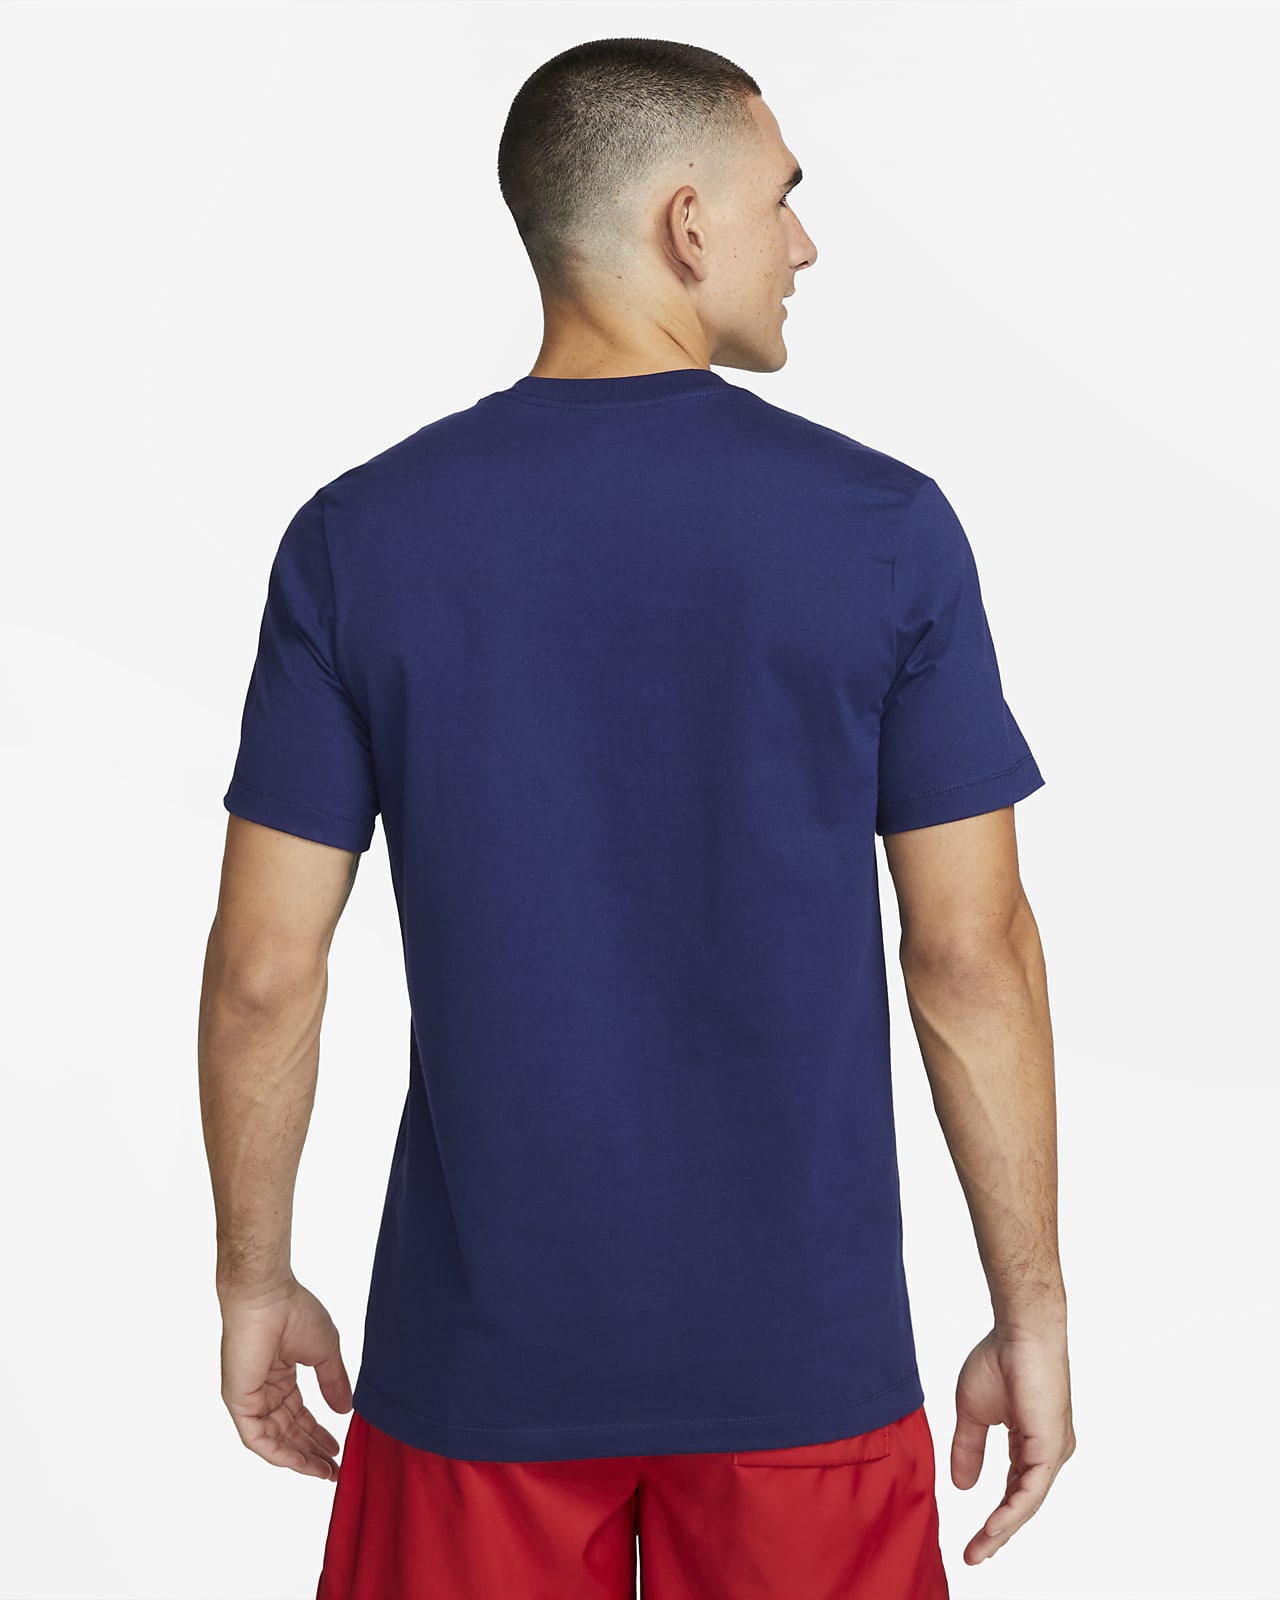 U.S. Men's Nike T-Shirt